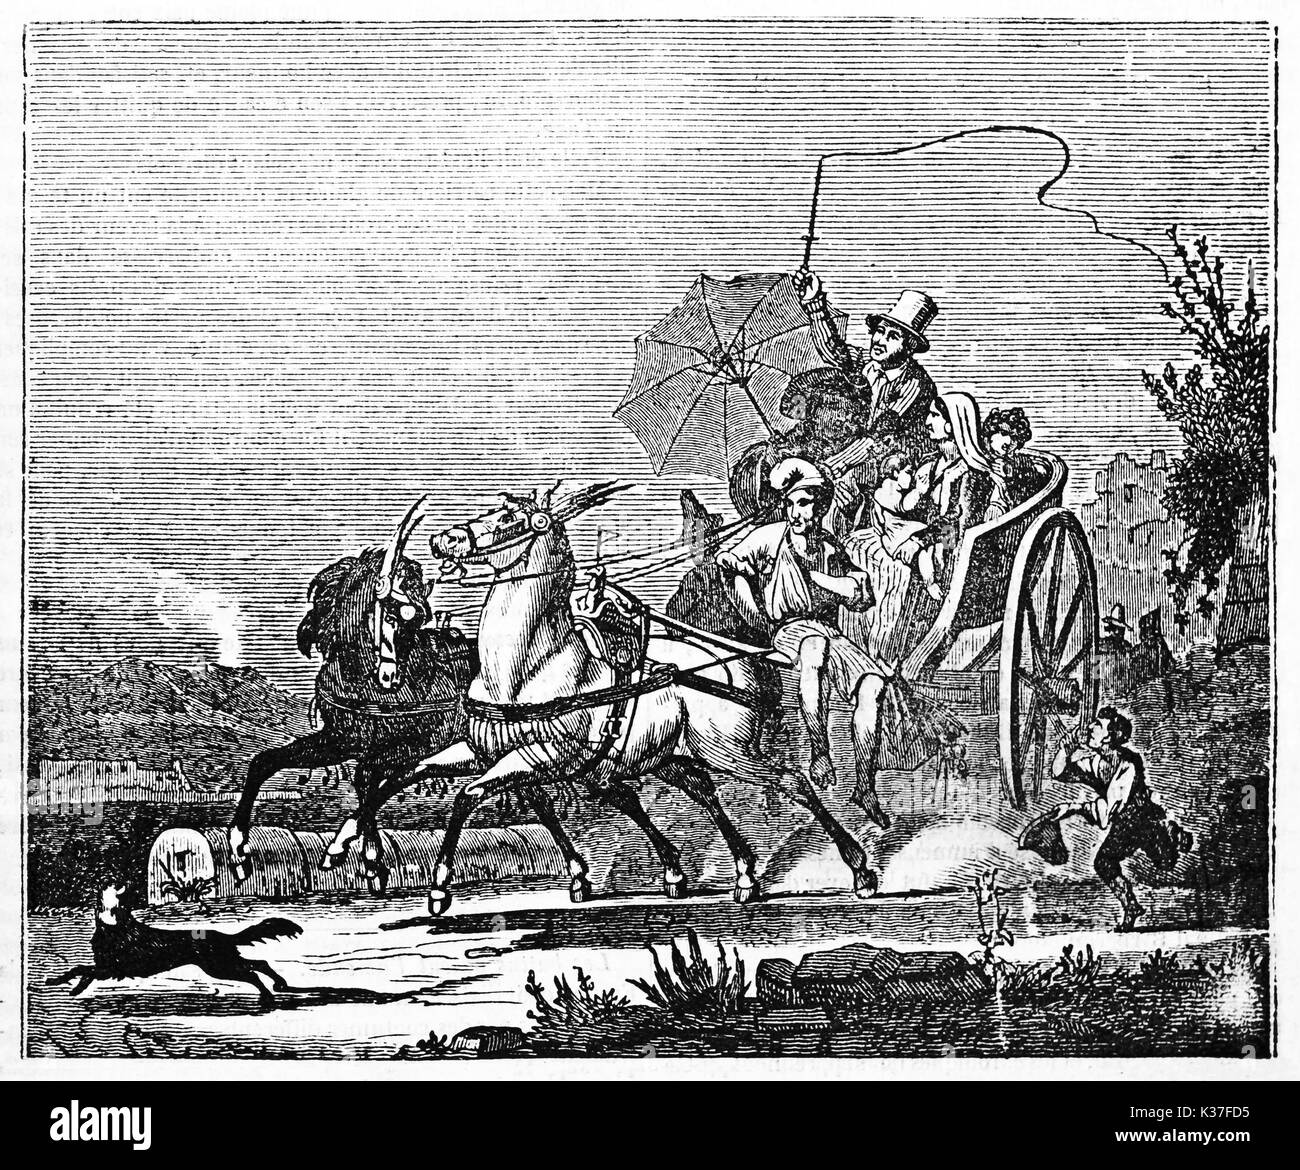 Alten neapolitanischen calash mit Pferden überqueren schnell eine Landschaft Pfad, Passagiere an Bord und Kutscher. Alte Illustration von unbekannter Autor auf Magasin Pittoresque Paris 1834 veröffentlicht. Stockfoto